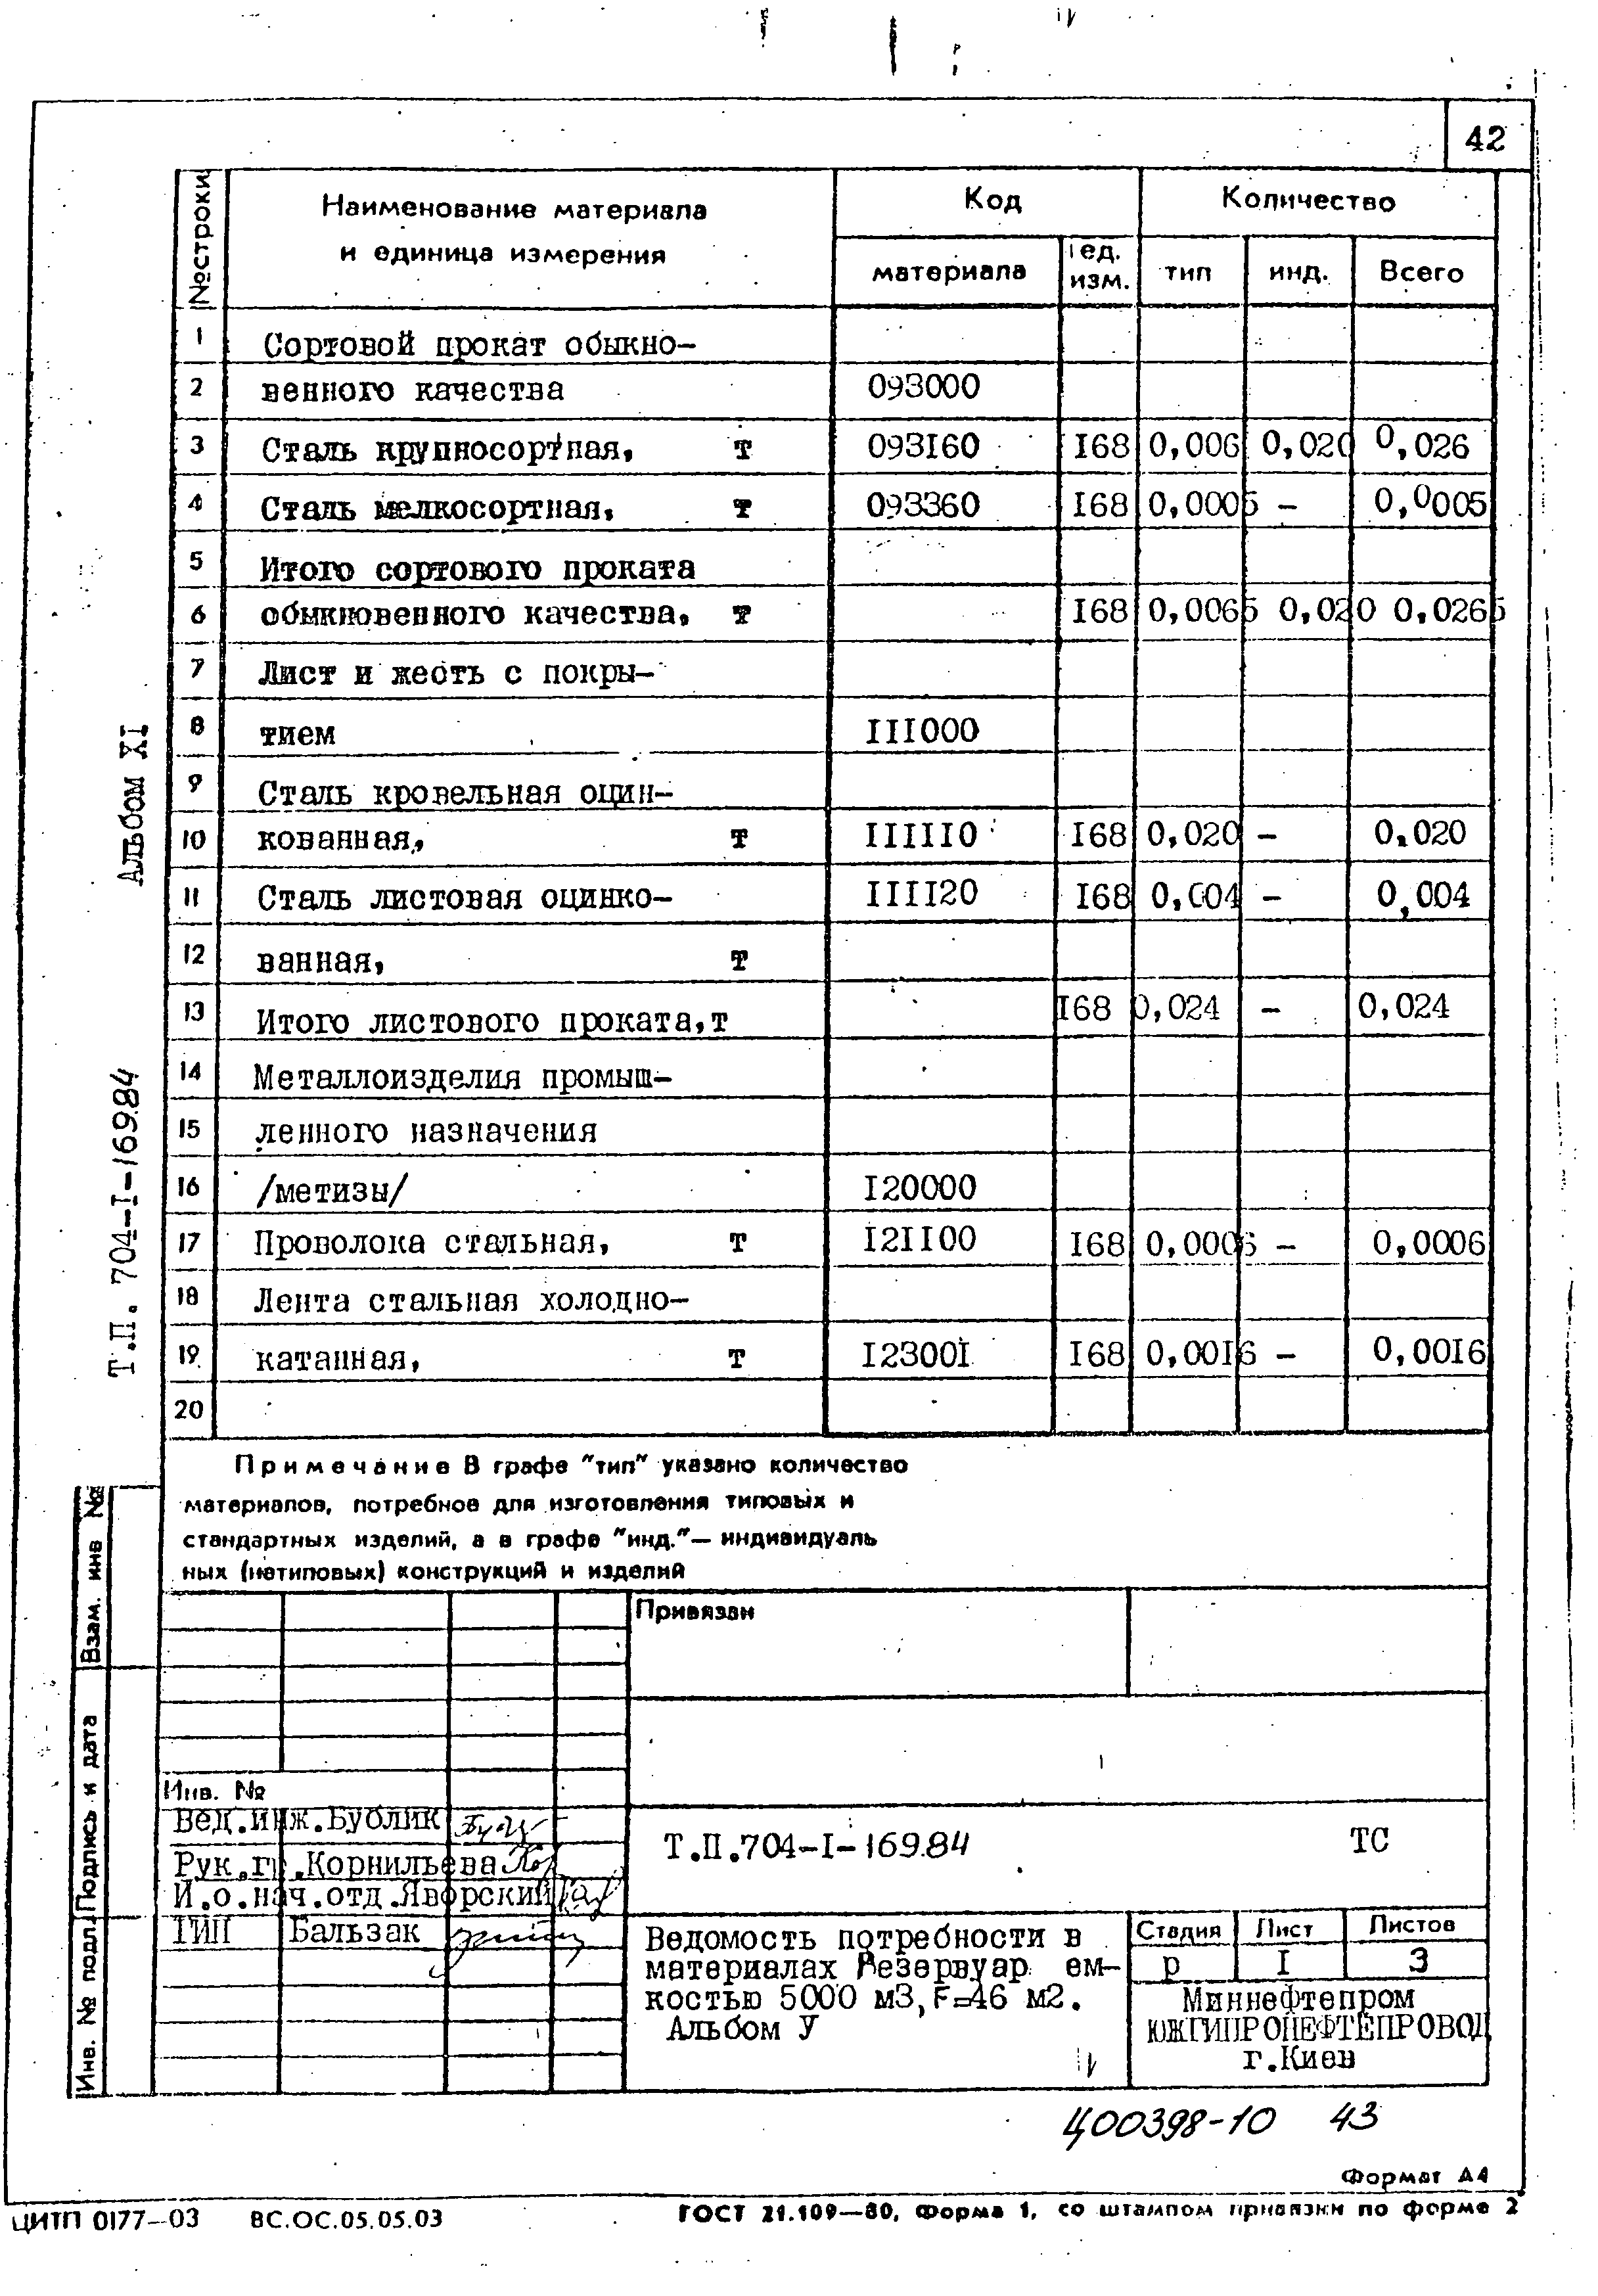 Типовой проект 704-1-169.84